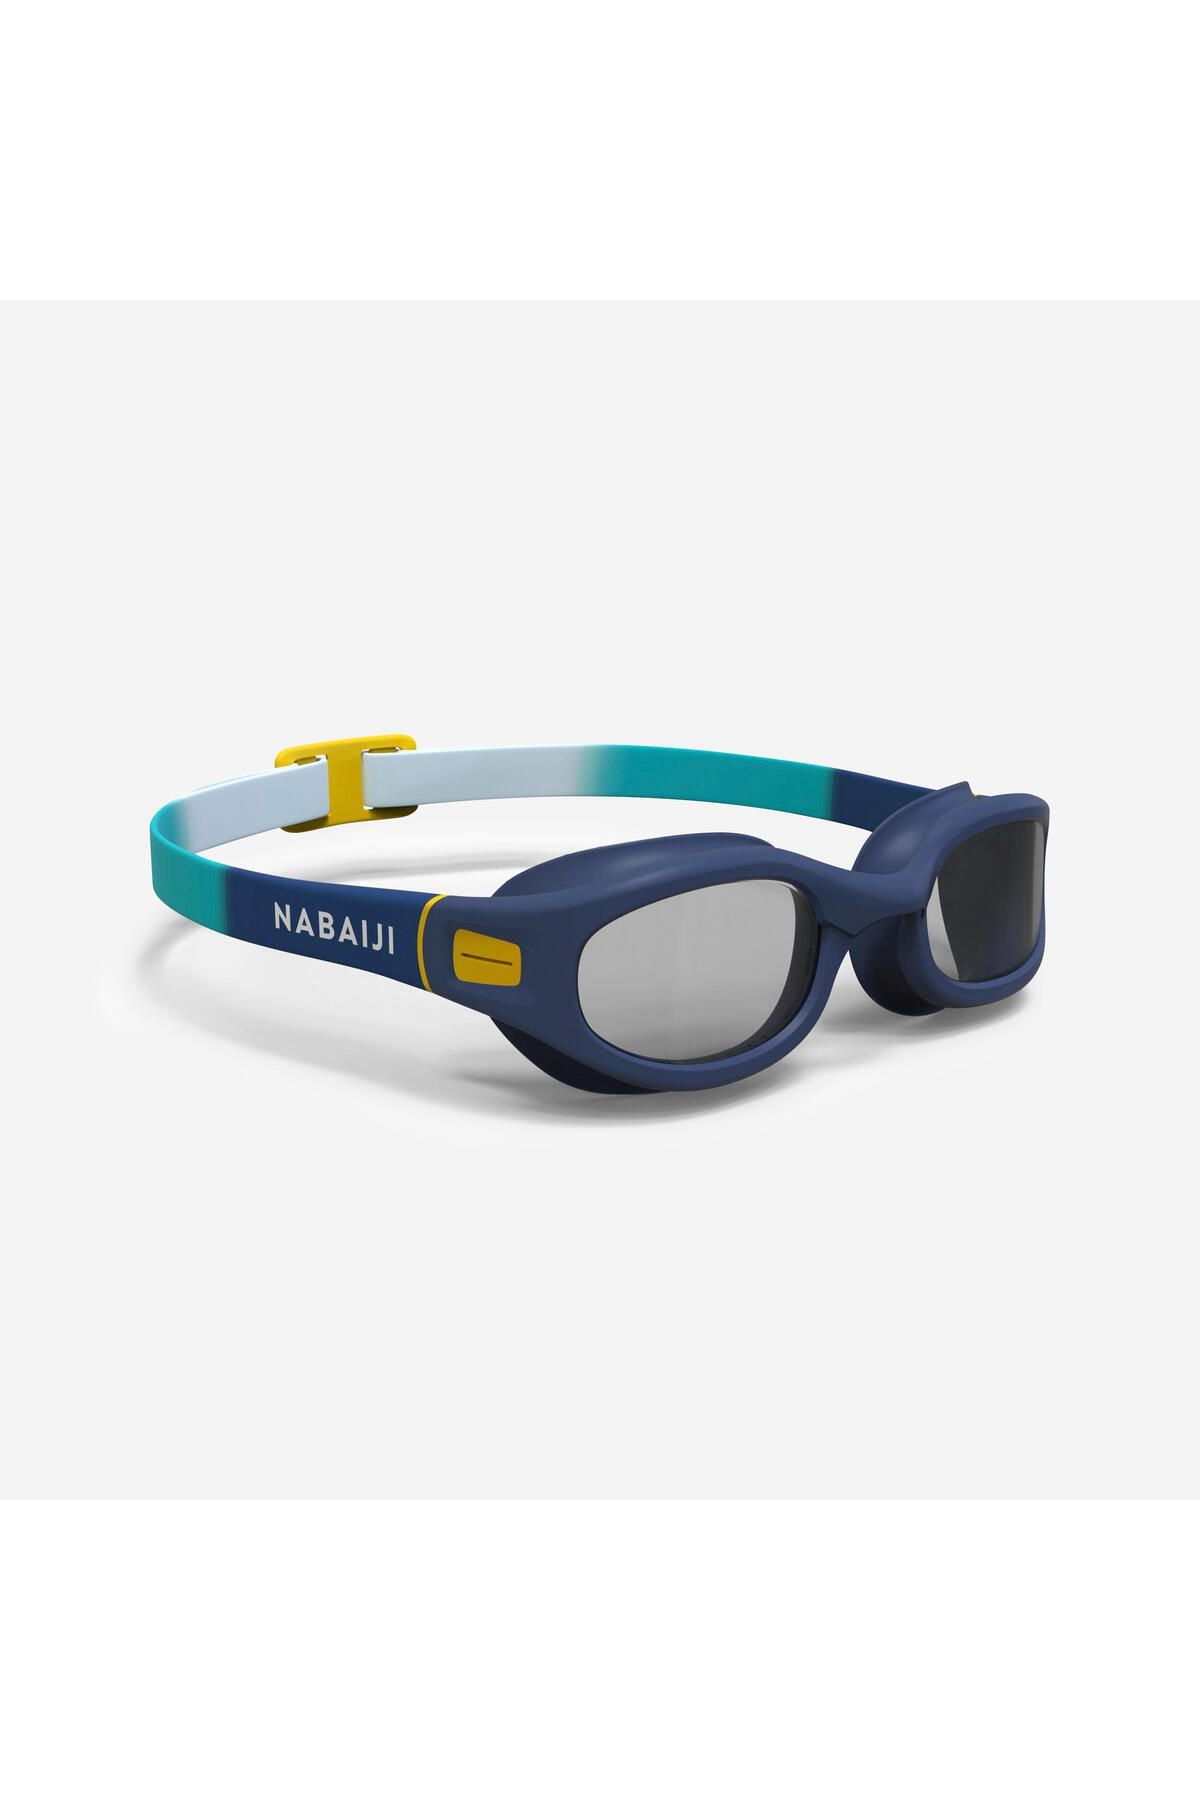 Decathlon Yüzücü Gözlüğü - S Boy - Mavi / Gri / Sarı - 100 Soft